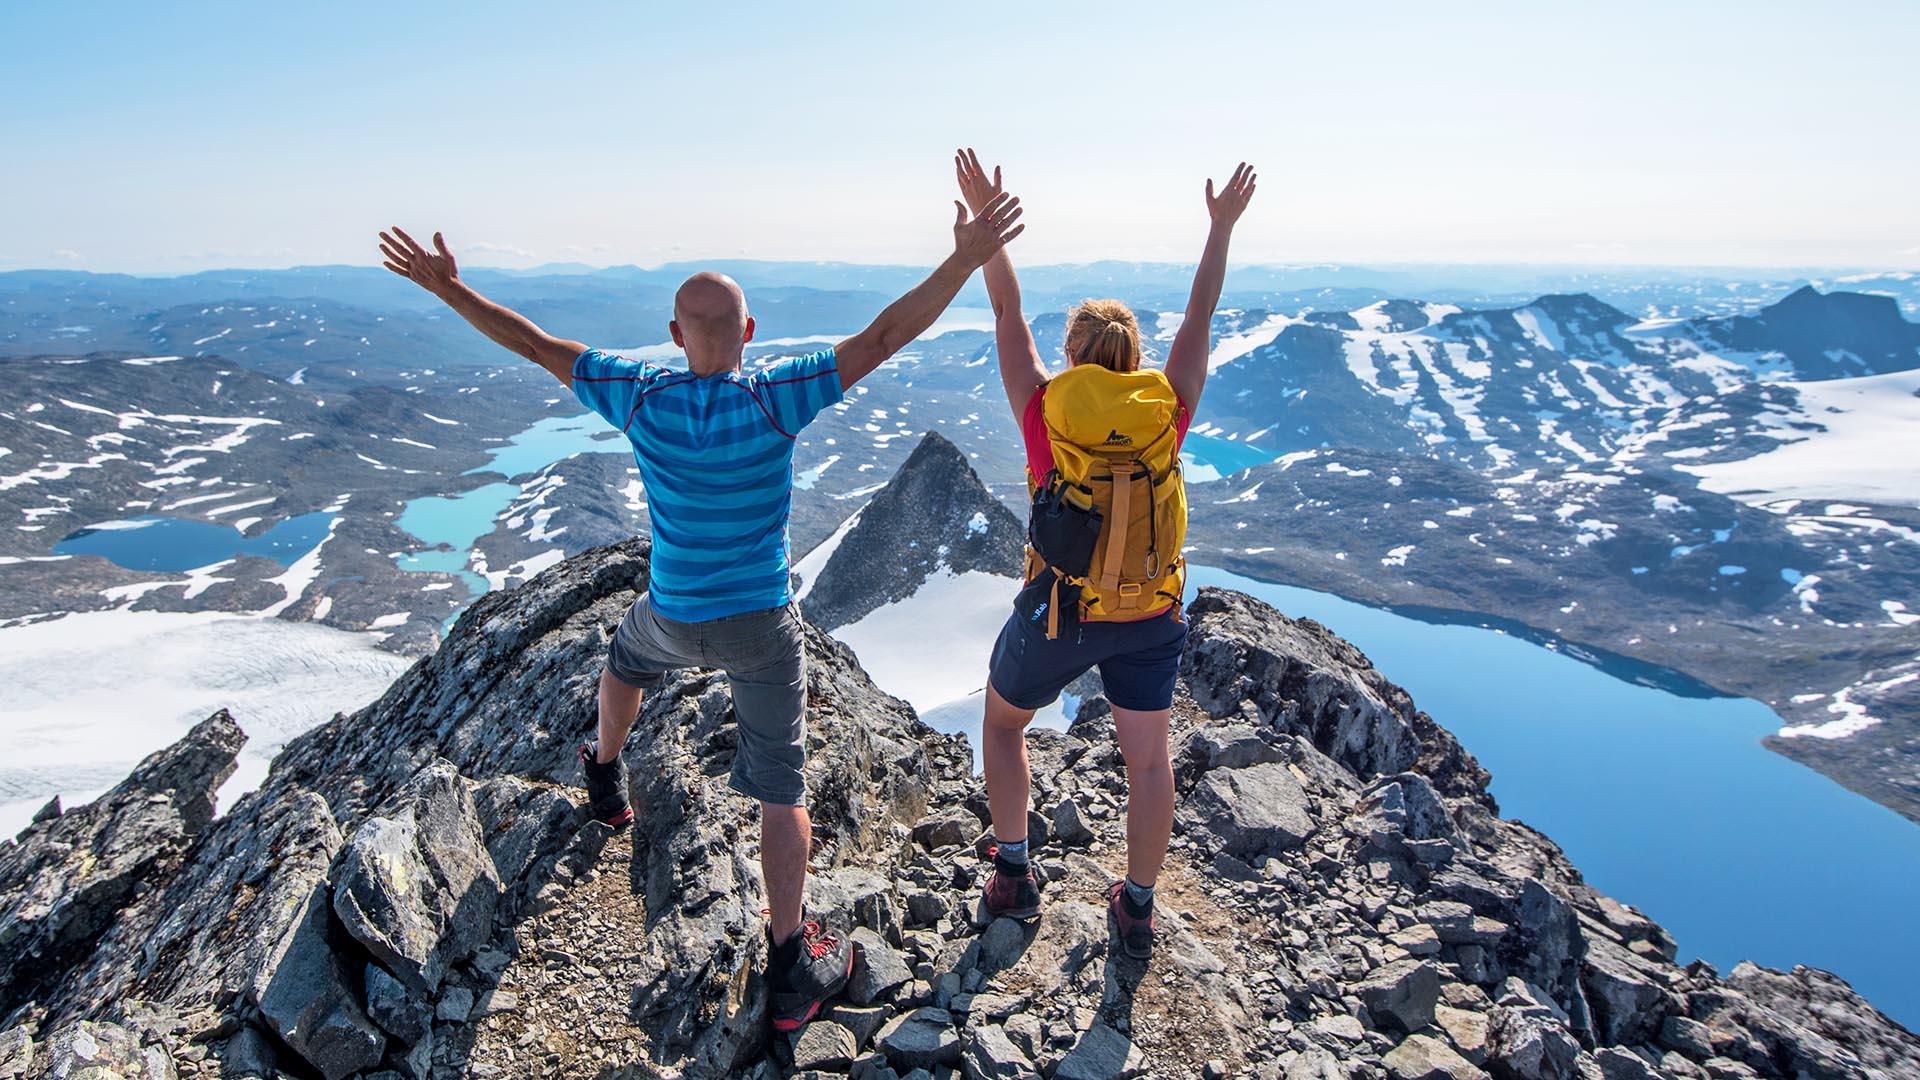 Zwei Bergwanderer in Sommersachen auf dem Gipfel eines hohen Berges schauen jubelnd über die nackte Gebirgslandschaft mit Gletschern, Seen und anderen hohen Bergen.